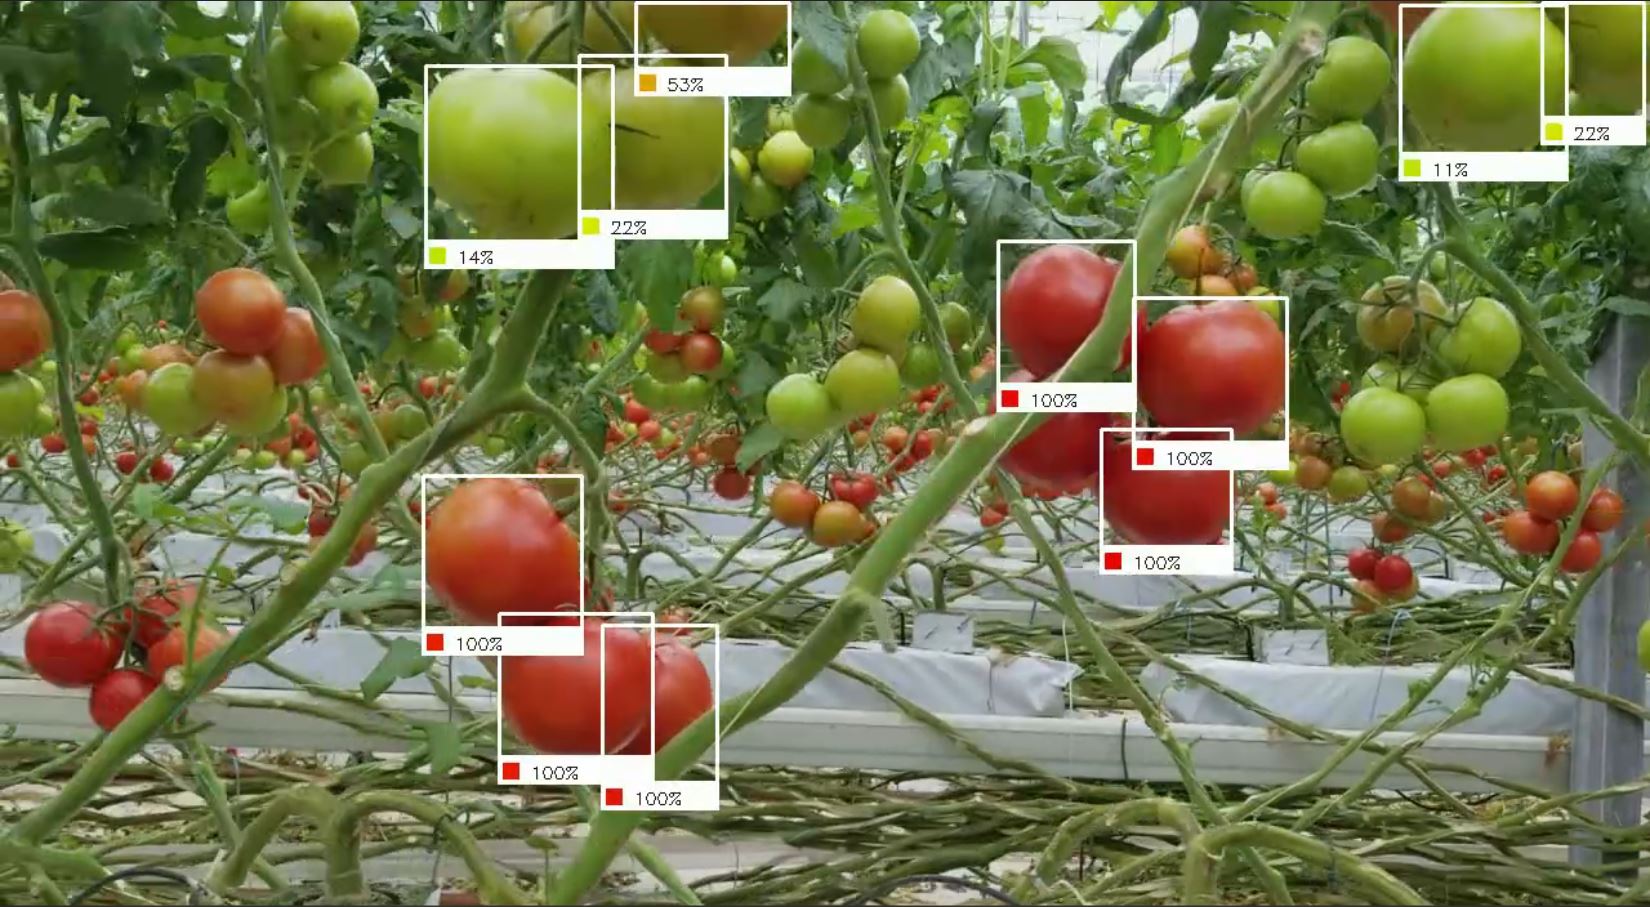 Robot sử dụng trí thông minh giúp chị em xử lý gọn các loại quả chín trong vườn chỉ trong tích tắc - Ảnh 4.